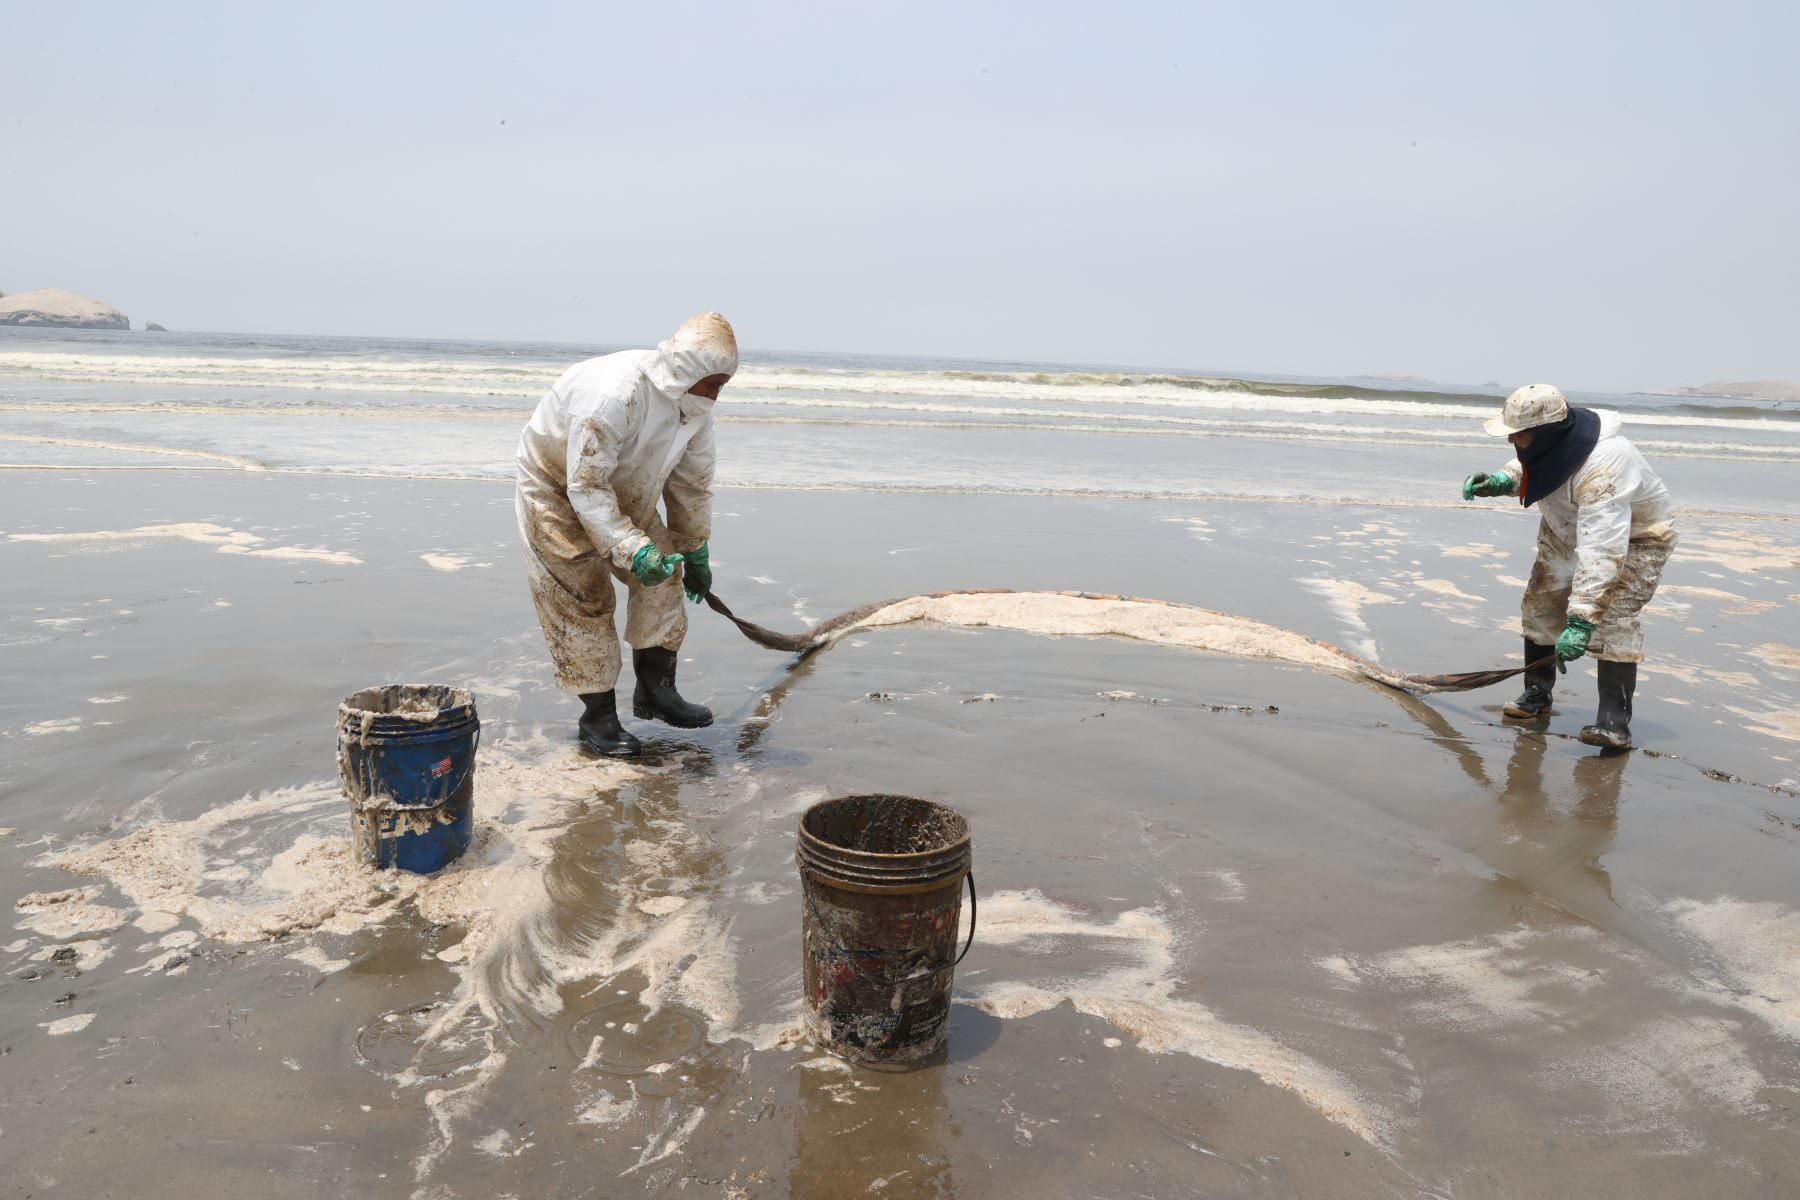 Continúan los trabajos de limpieza en Playa Grande en Santa Rosa, tras el derrame de petróleo ocasionado por la empresa Repsol que afectó varias playas de la capital y del norte chico. Foto: ANDINA/Vidal Tarqui